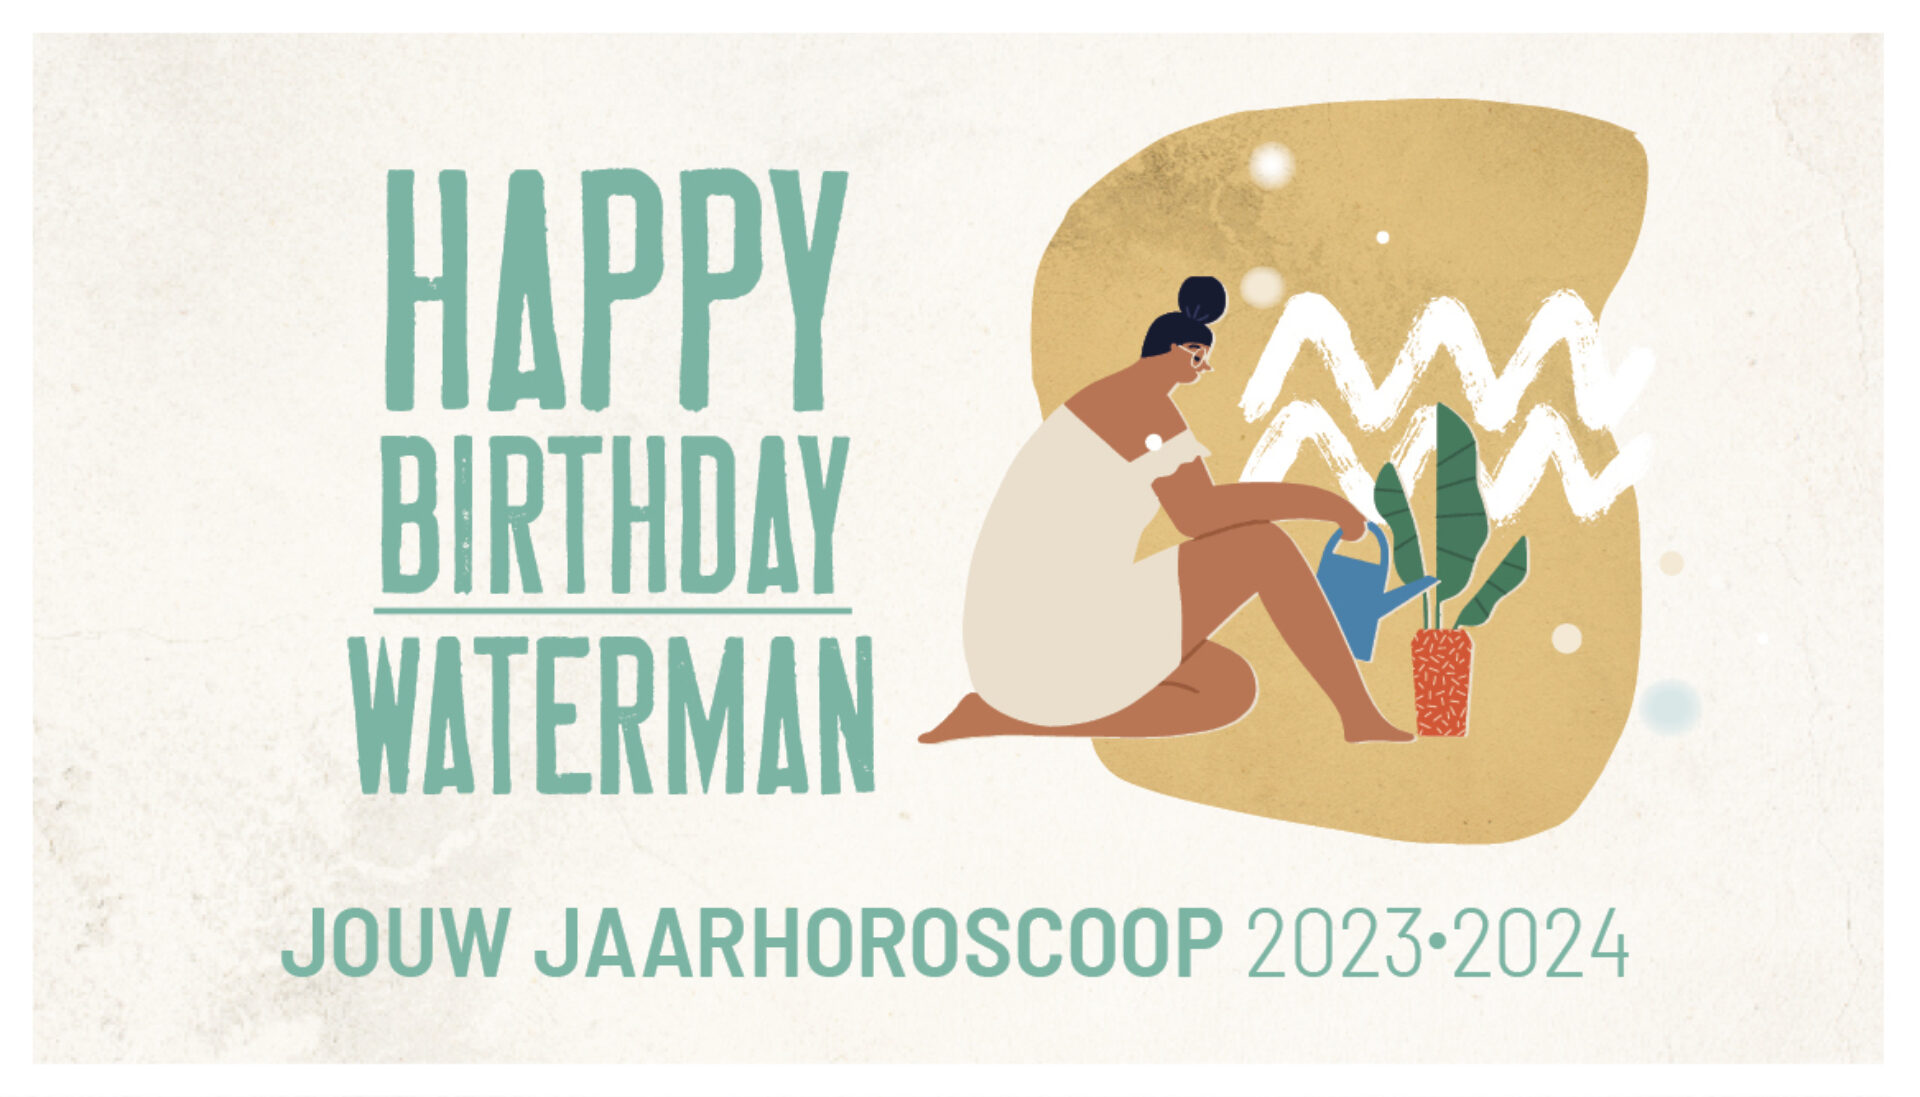 Waterman, jouw jaarhoroscoop 2023-2024